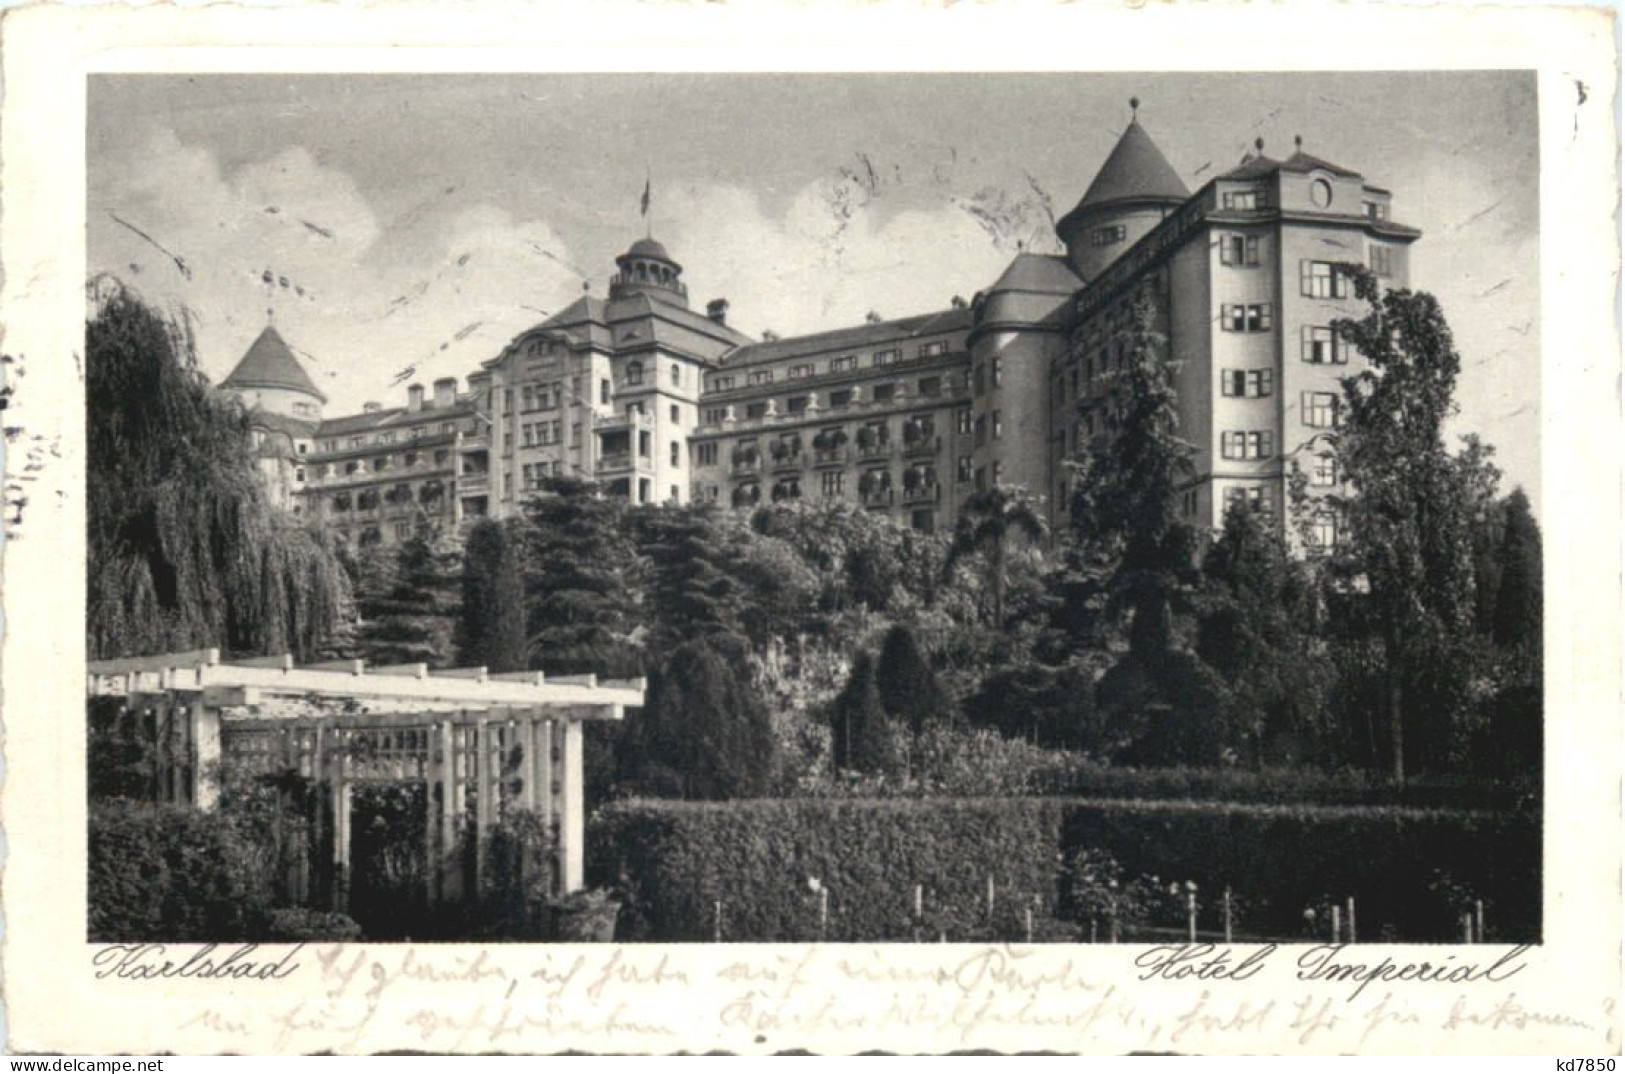 Karlsbad - Hotel Imperial - Boehmen Und Maehren